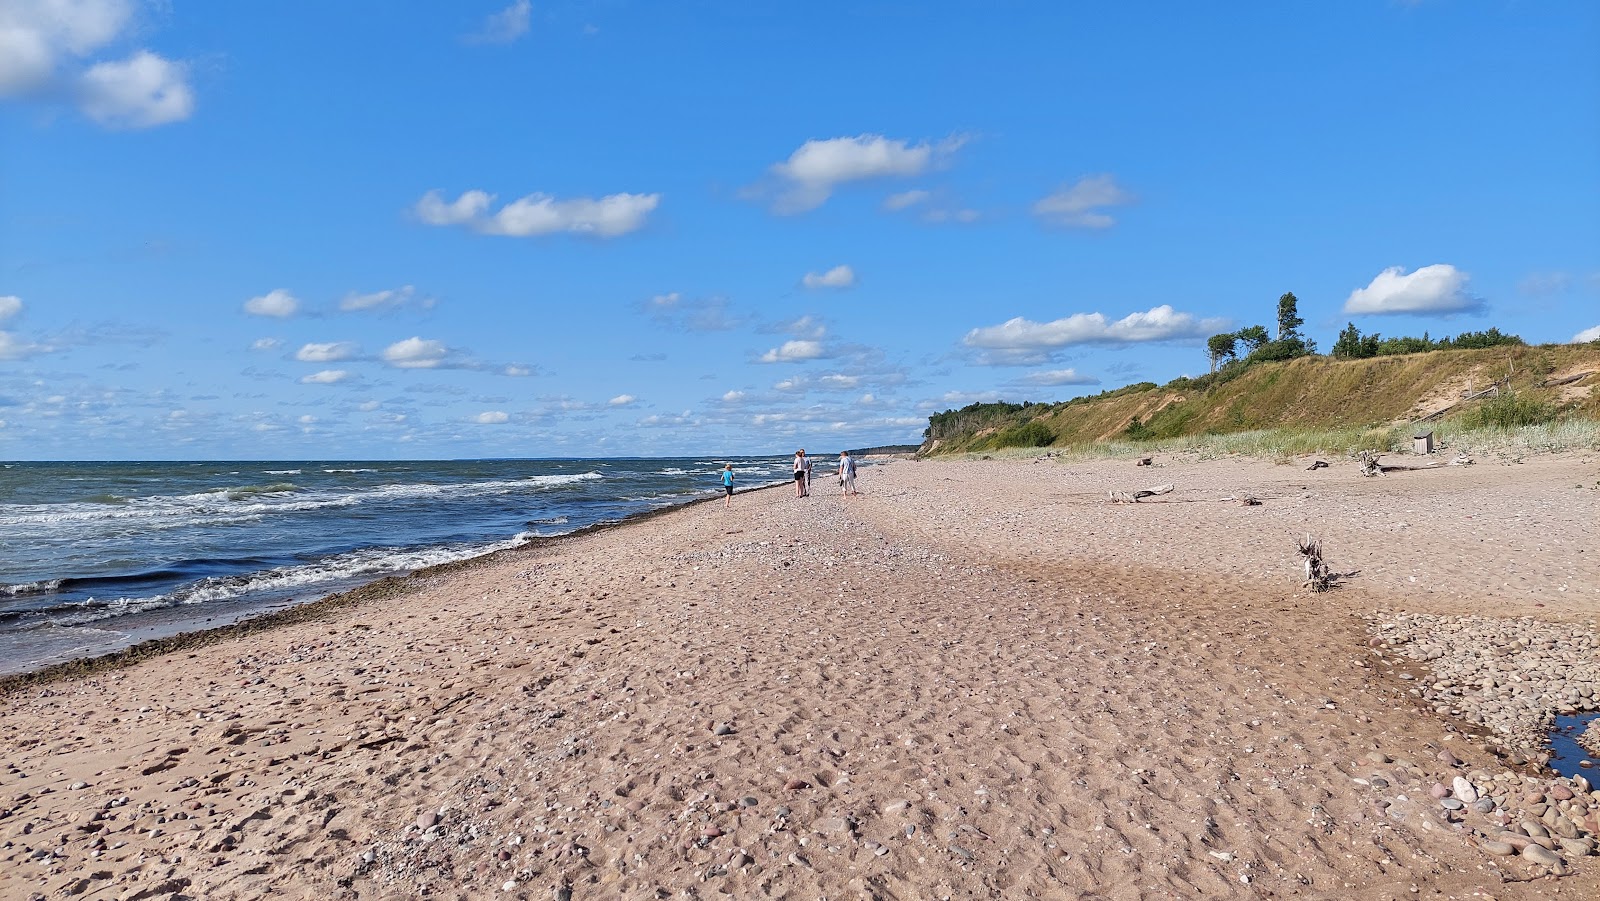 Φωτογραφία του 57 parallels beach με ψιλή άμμος και βότσαλο επιφάνεια